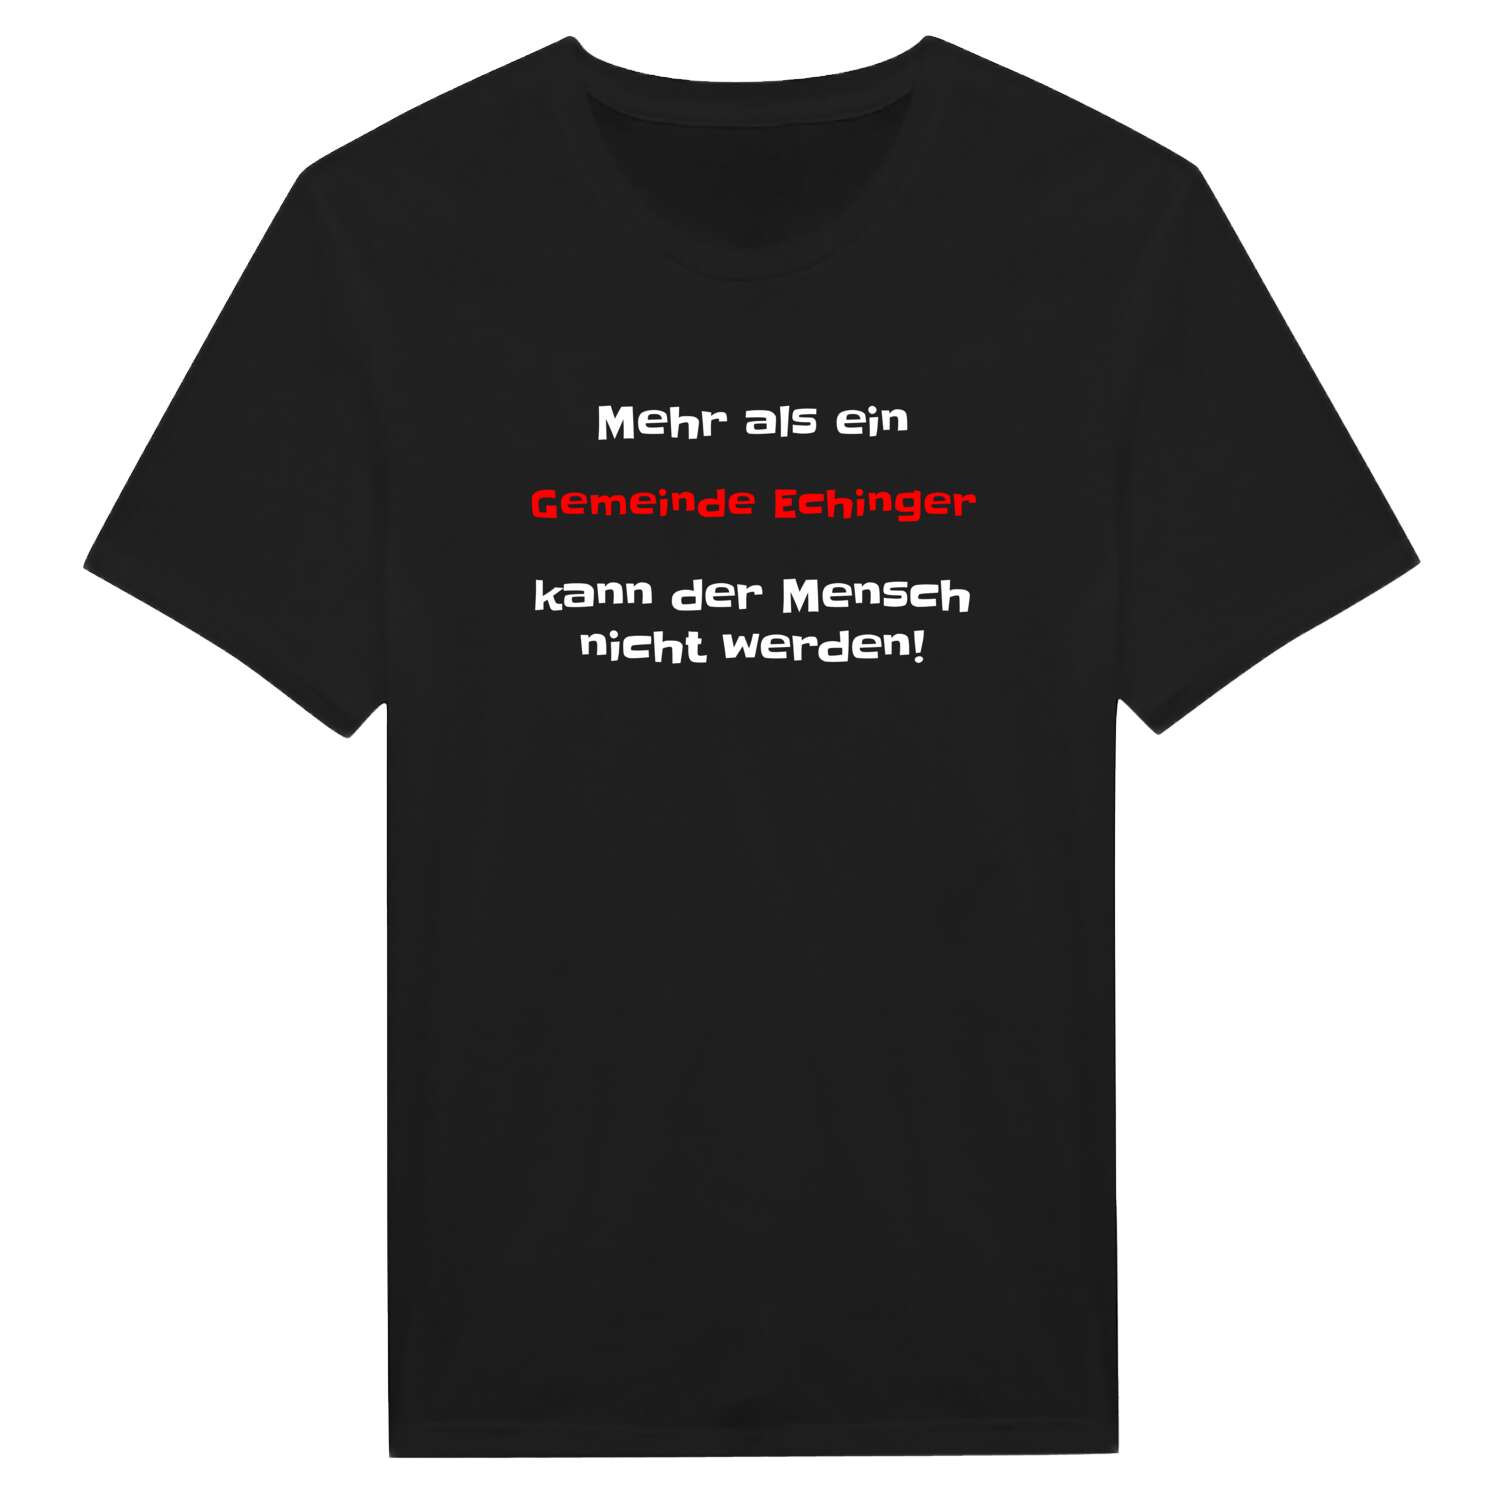 Gemeinde Eching T-Shirt »Mehr als ein«